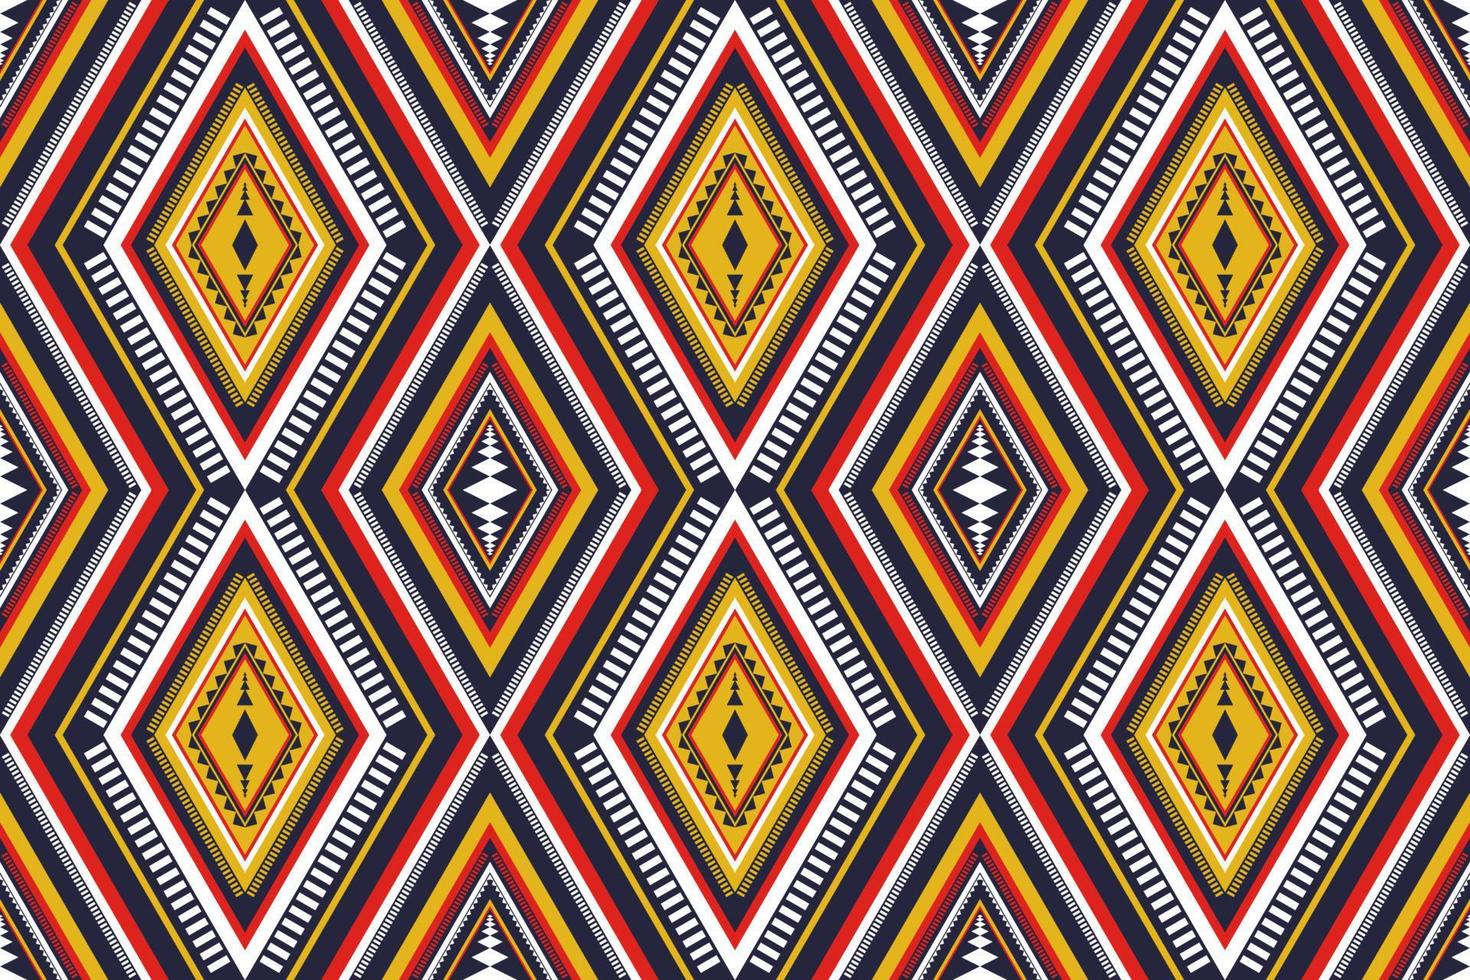 padrão sem emenda oriental geométrico étnico tradicional. design para plano de fundo, papel de parede, ilustração vetorial, têxtil, tecido, vestuário, batik, tapete, bordado. vetor